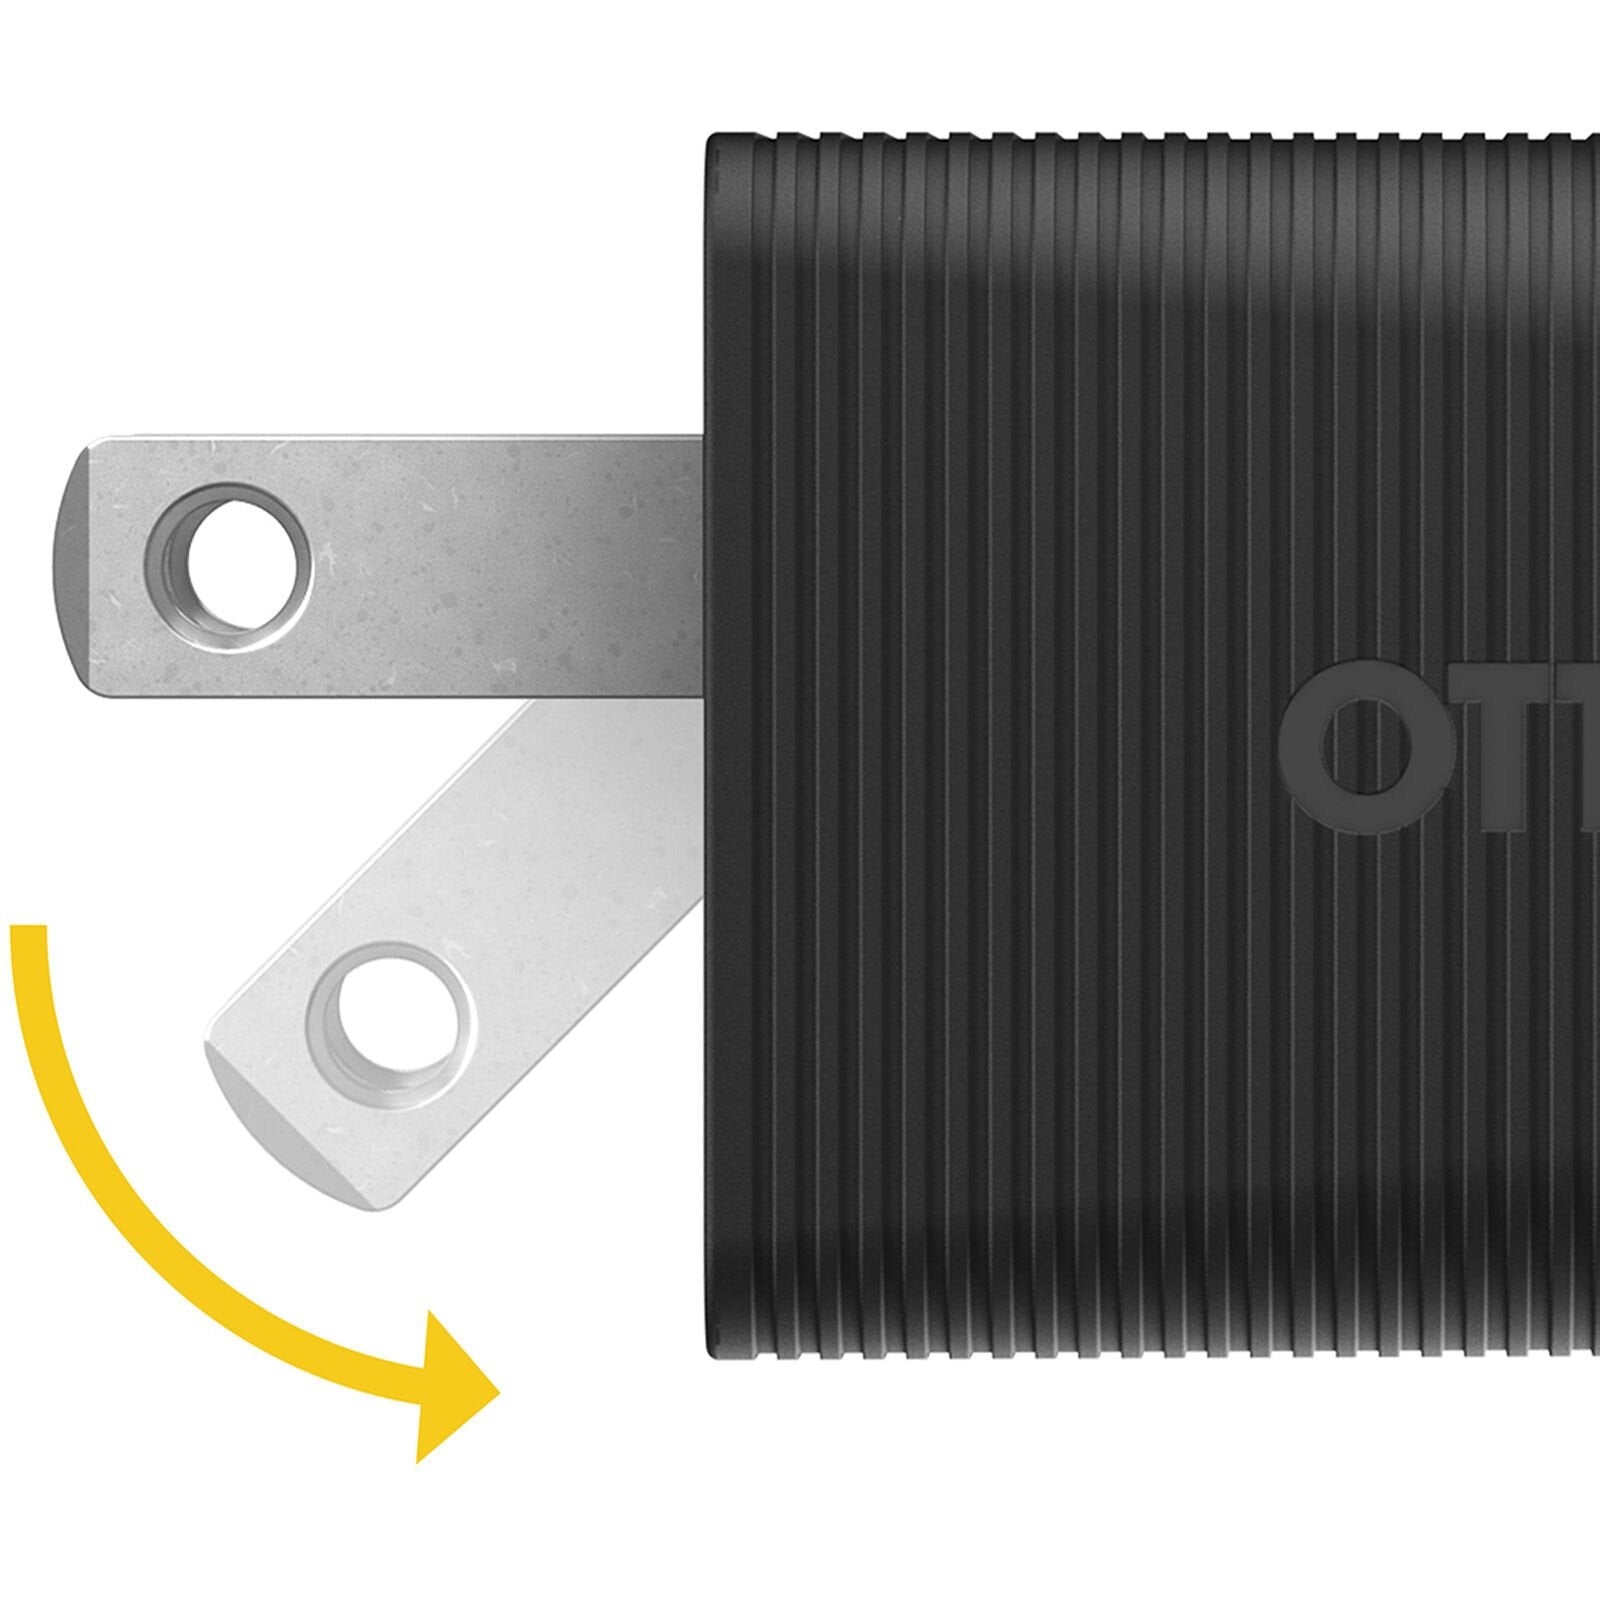 OtterBox Premium Pro USB-C Fast Wall Charger 60W Dual Port - Black (New)